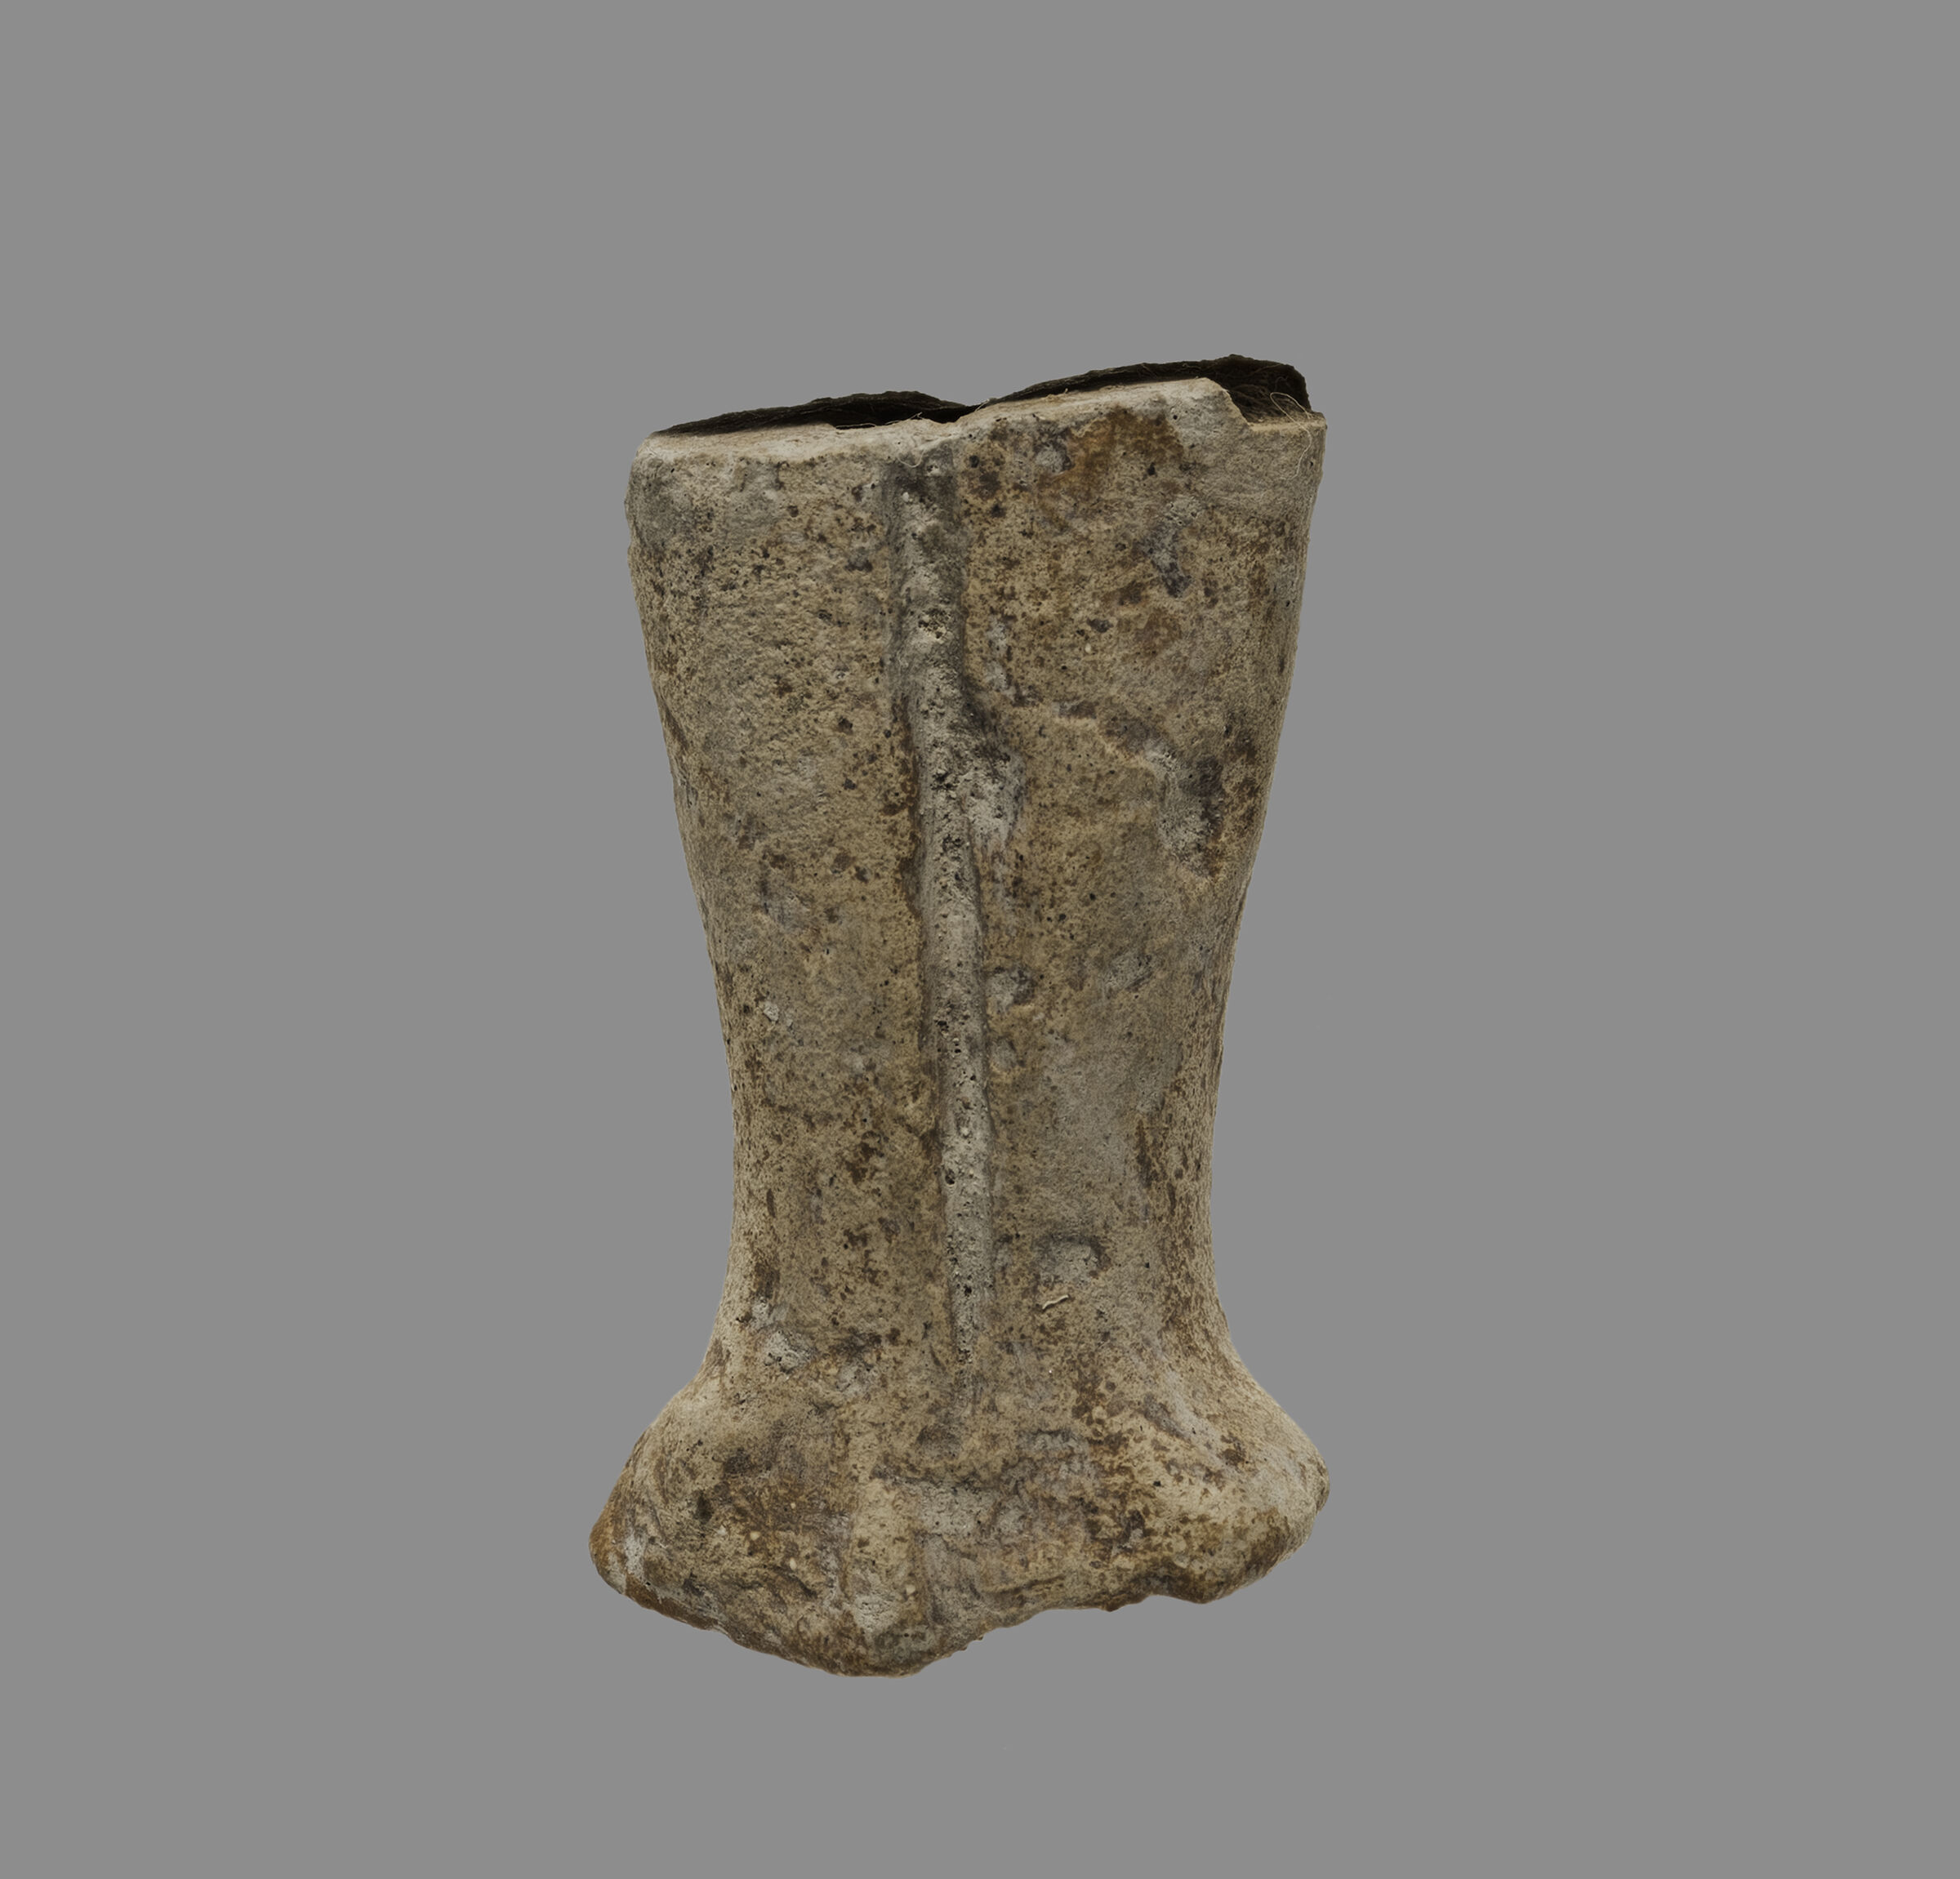 Anthropomorphic Female Figurine Fragment: Legs